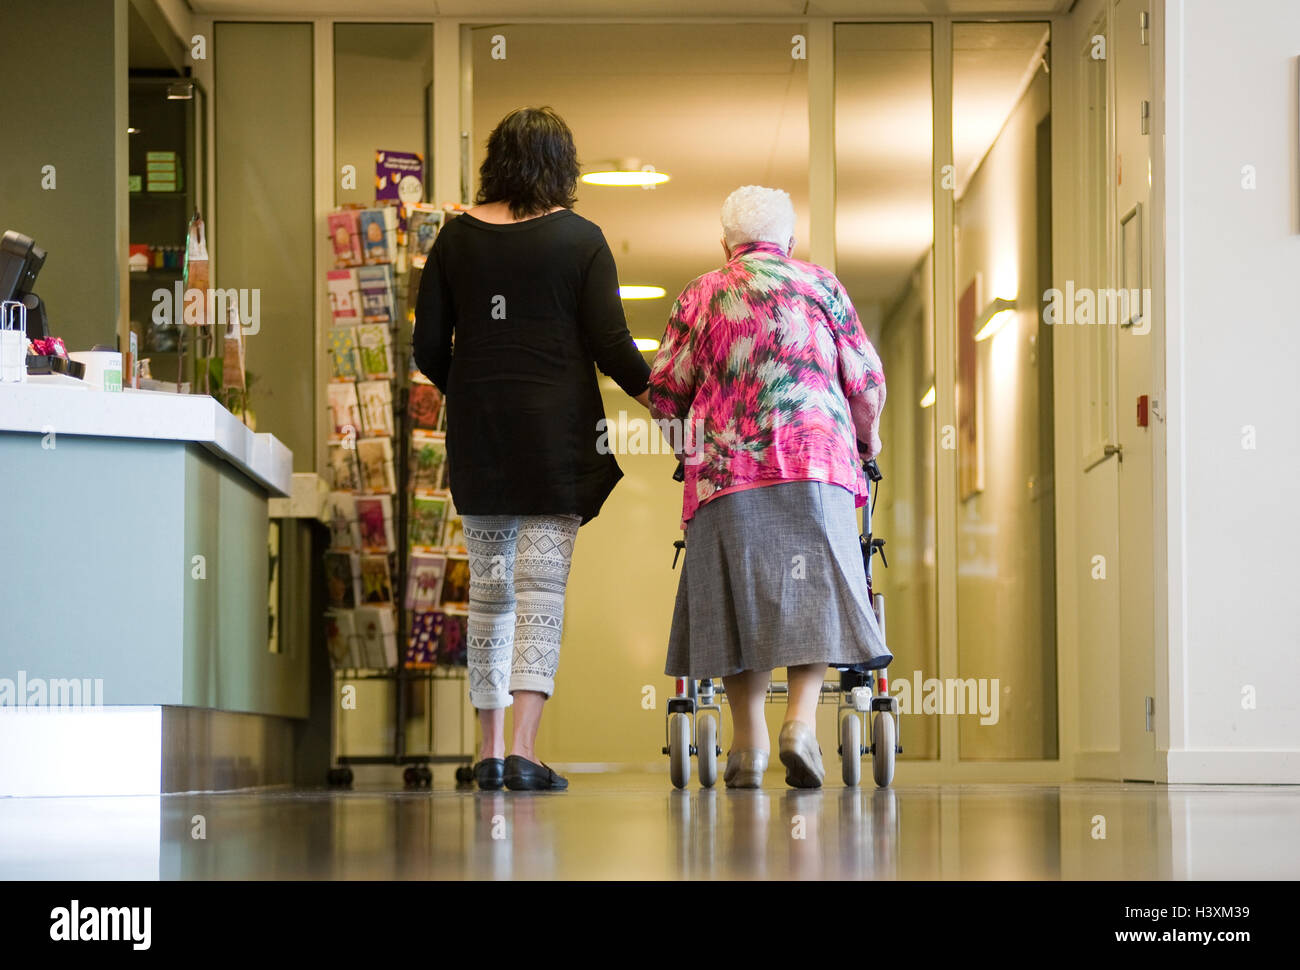 ALMELO, Niederlande - 15. Juni 2016: Eine Frau ist eine ältere Frau mit einem Rollator in ein Altenheim zu unterstützen. Stockfoto